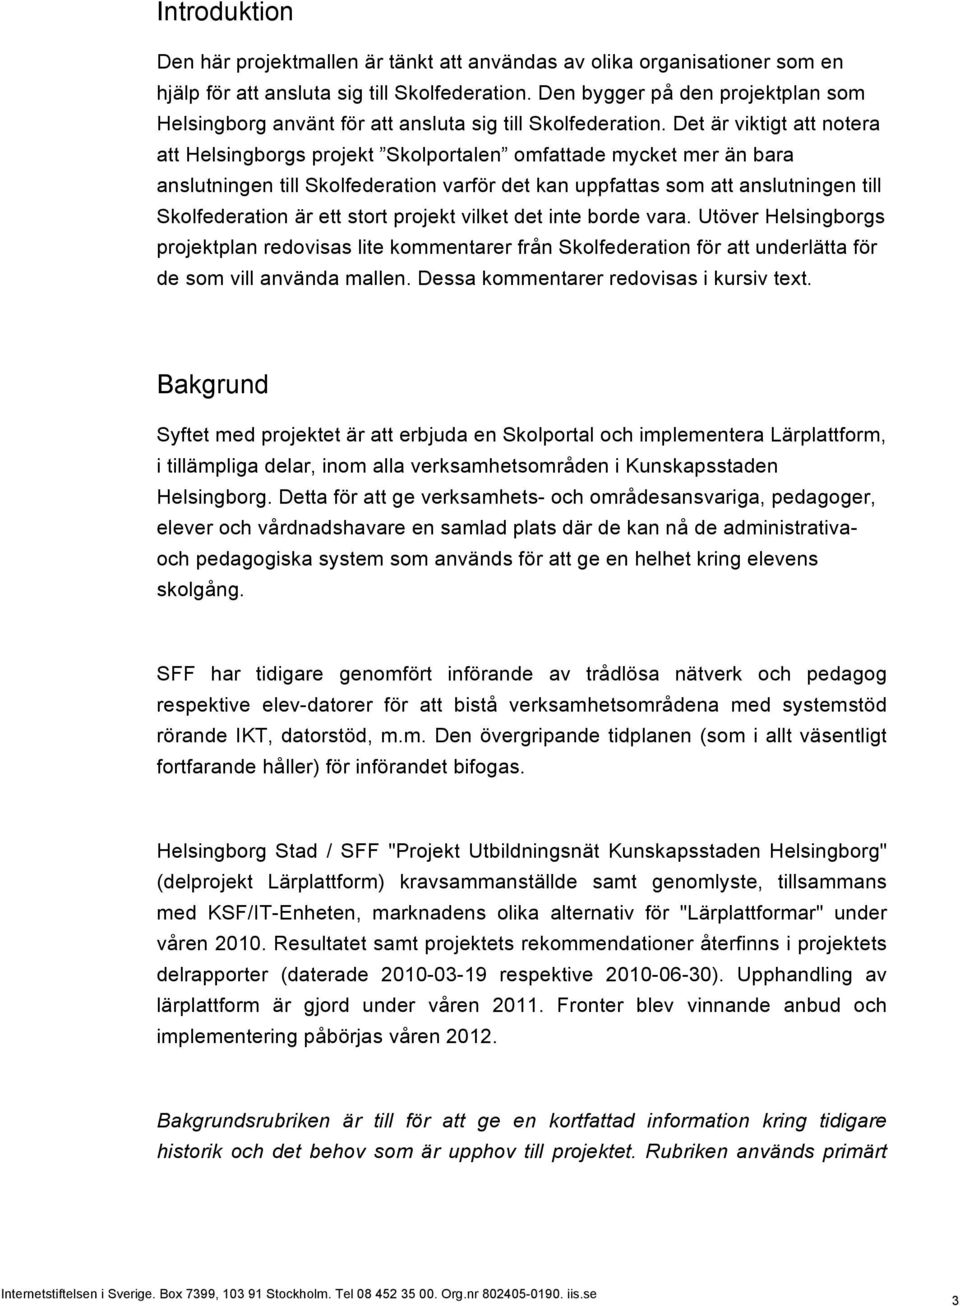 Det är viktigt att notera att Helsingborgs projekt Skolportalen omfattade mycket mer än bara anslutningen till Skolfederation varför det kan uppfattas som att anslutningen till Skolfederation är ett